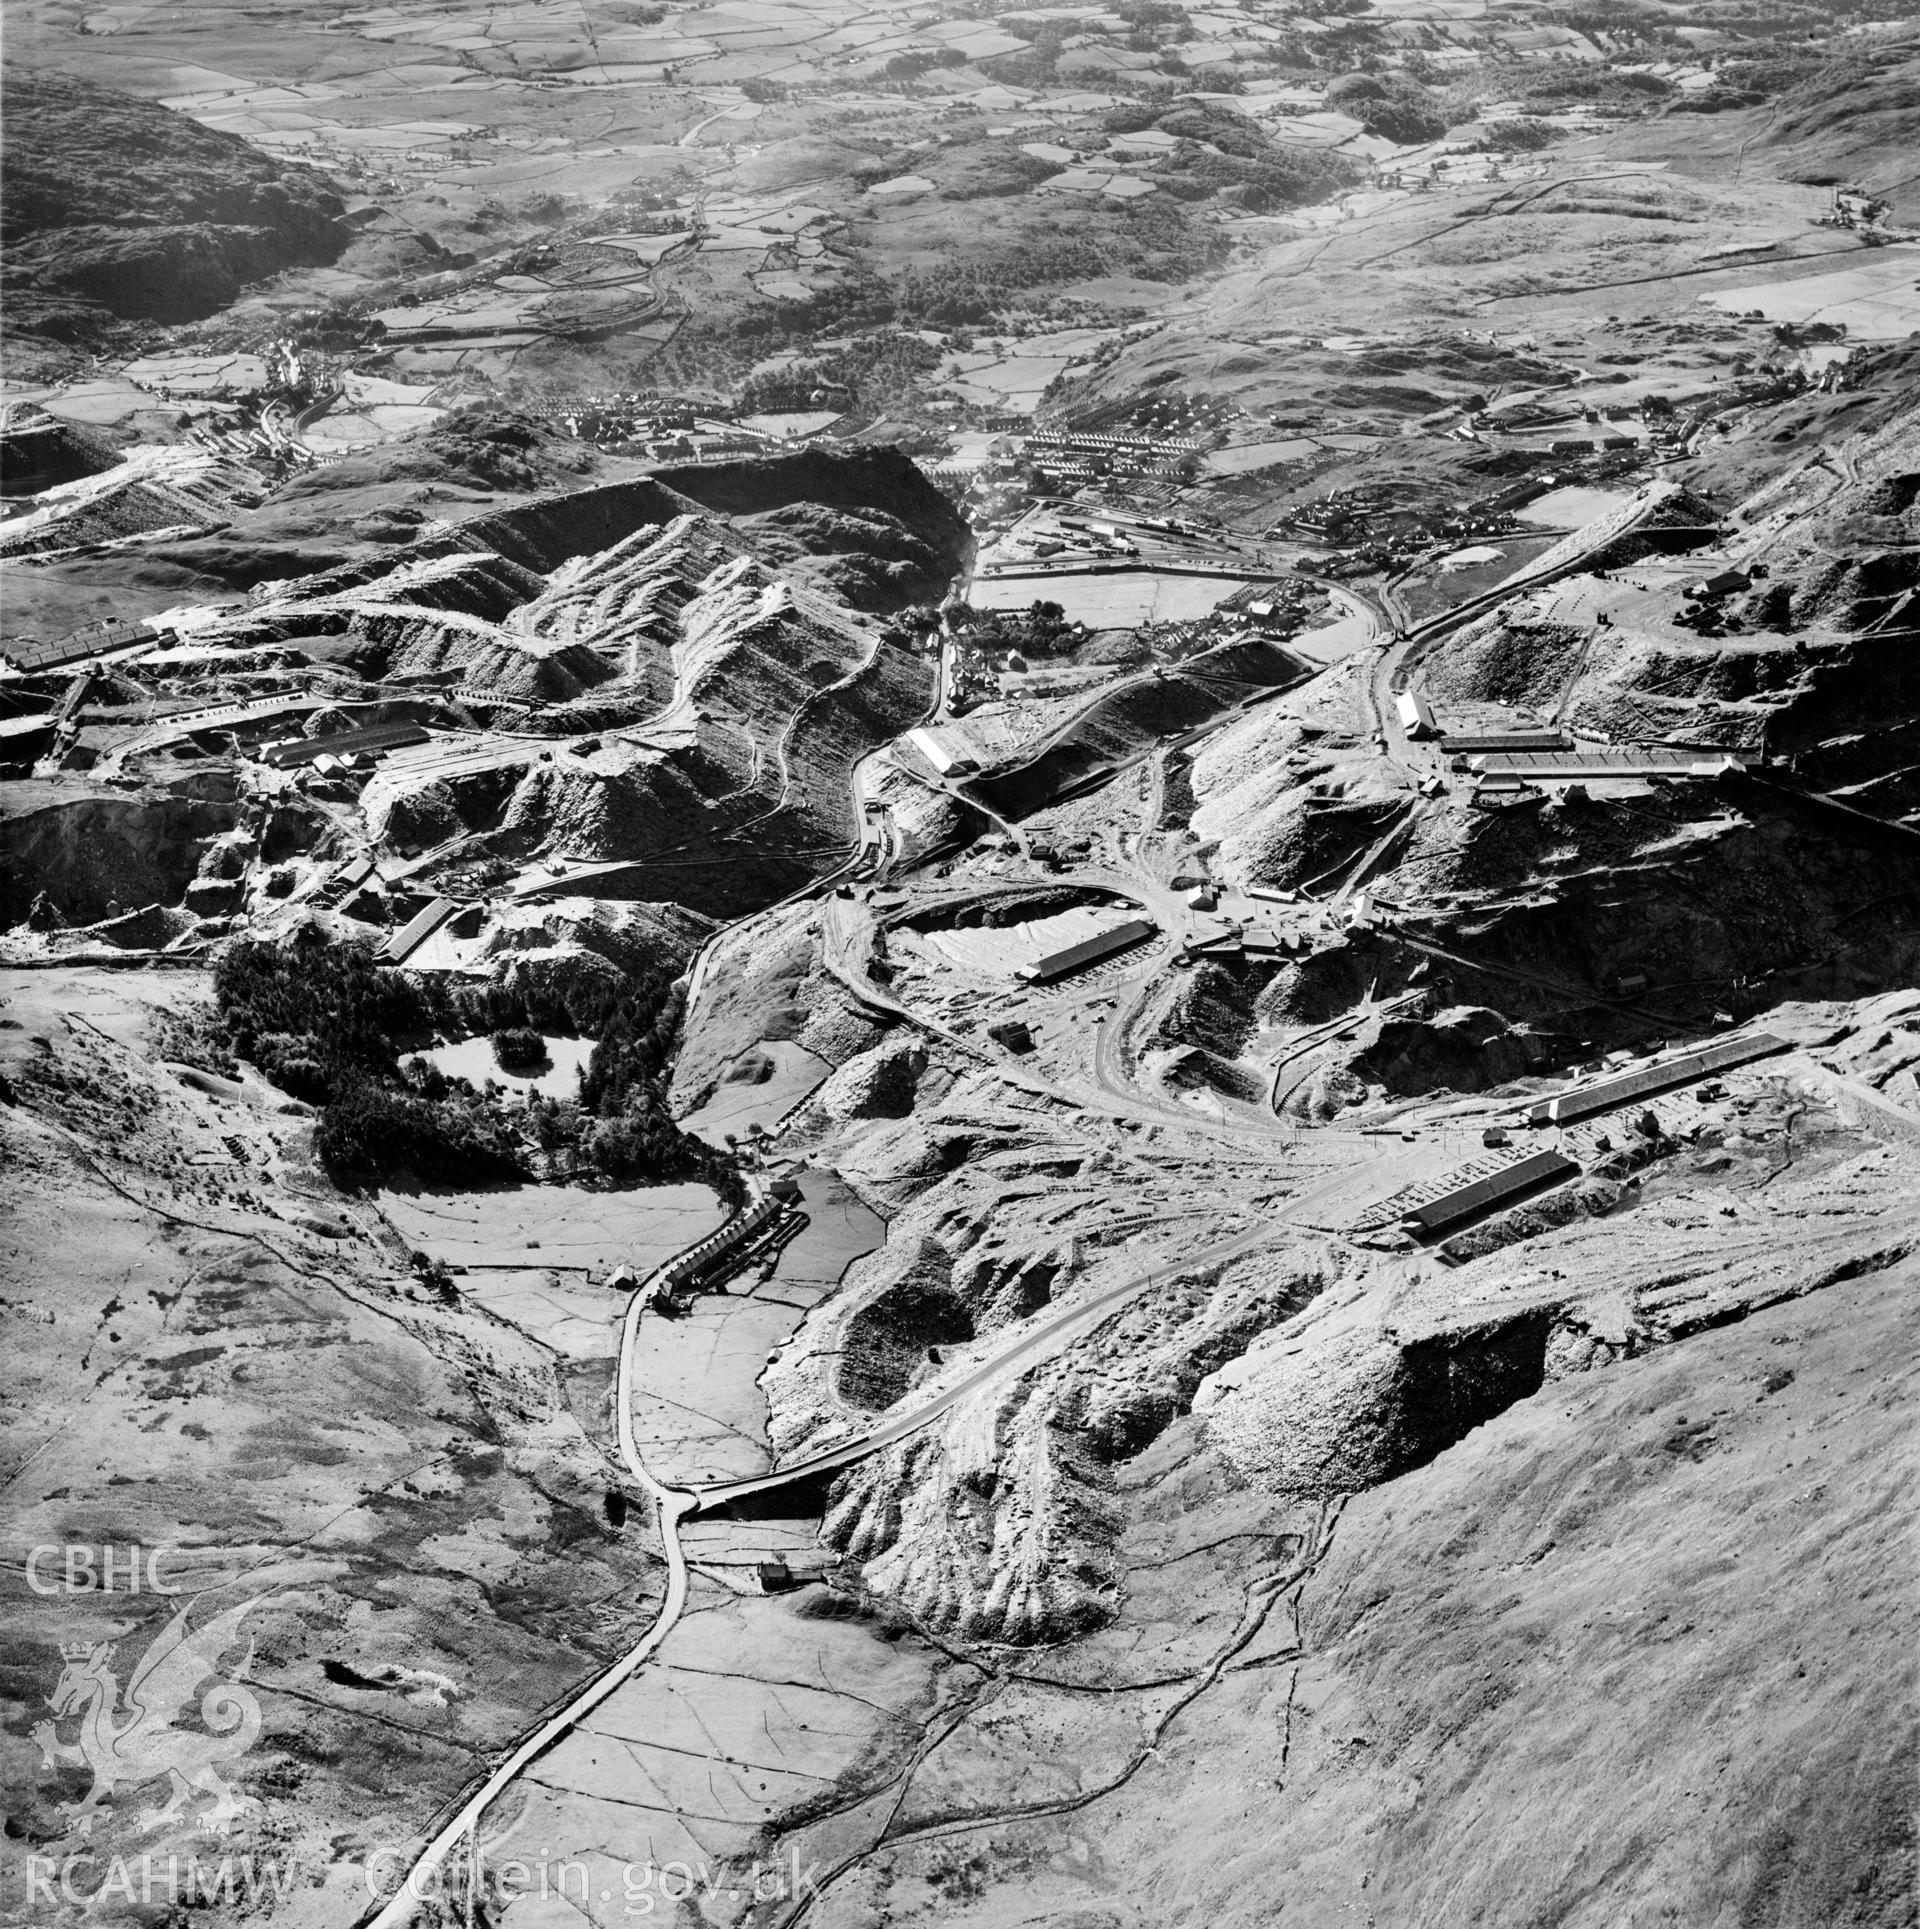 View of Madoc quarry, Blaenau Ffestiniog, commissioned by Cawood Wharton & Co. Ltd.